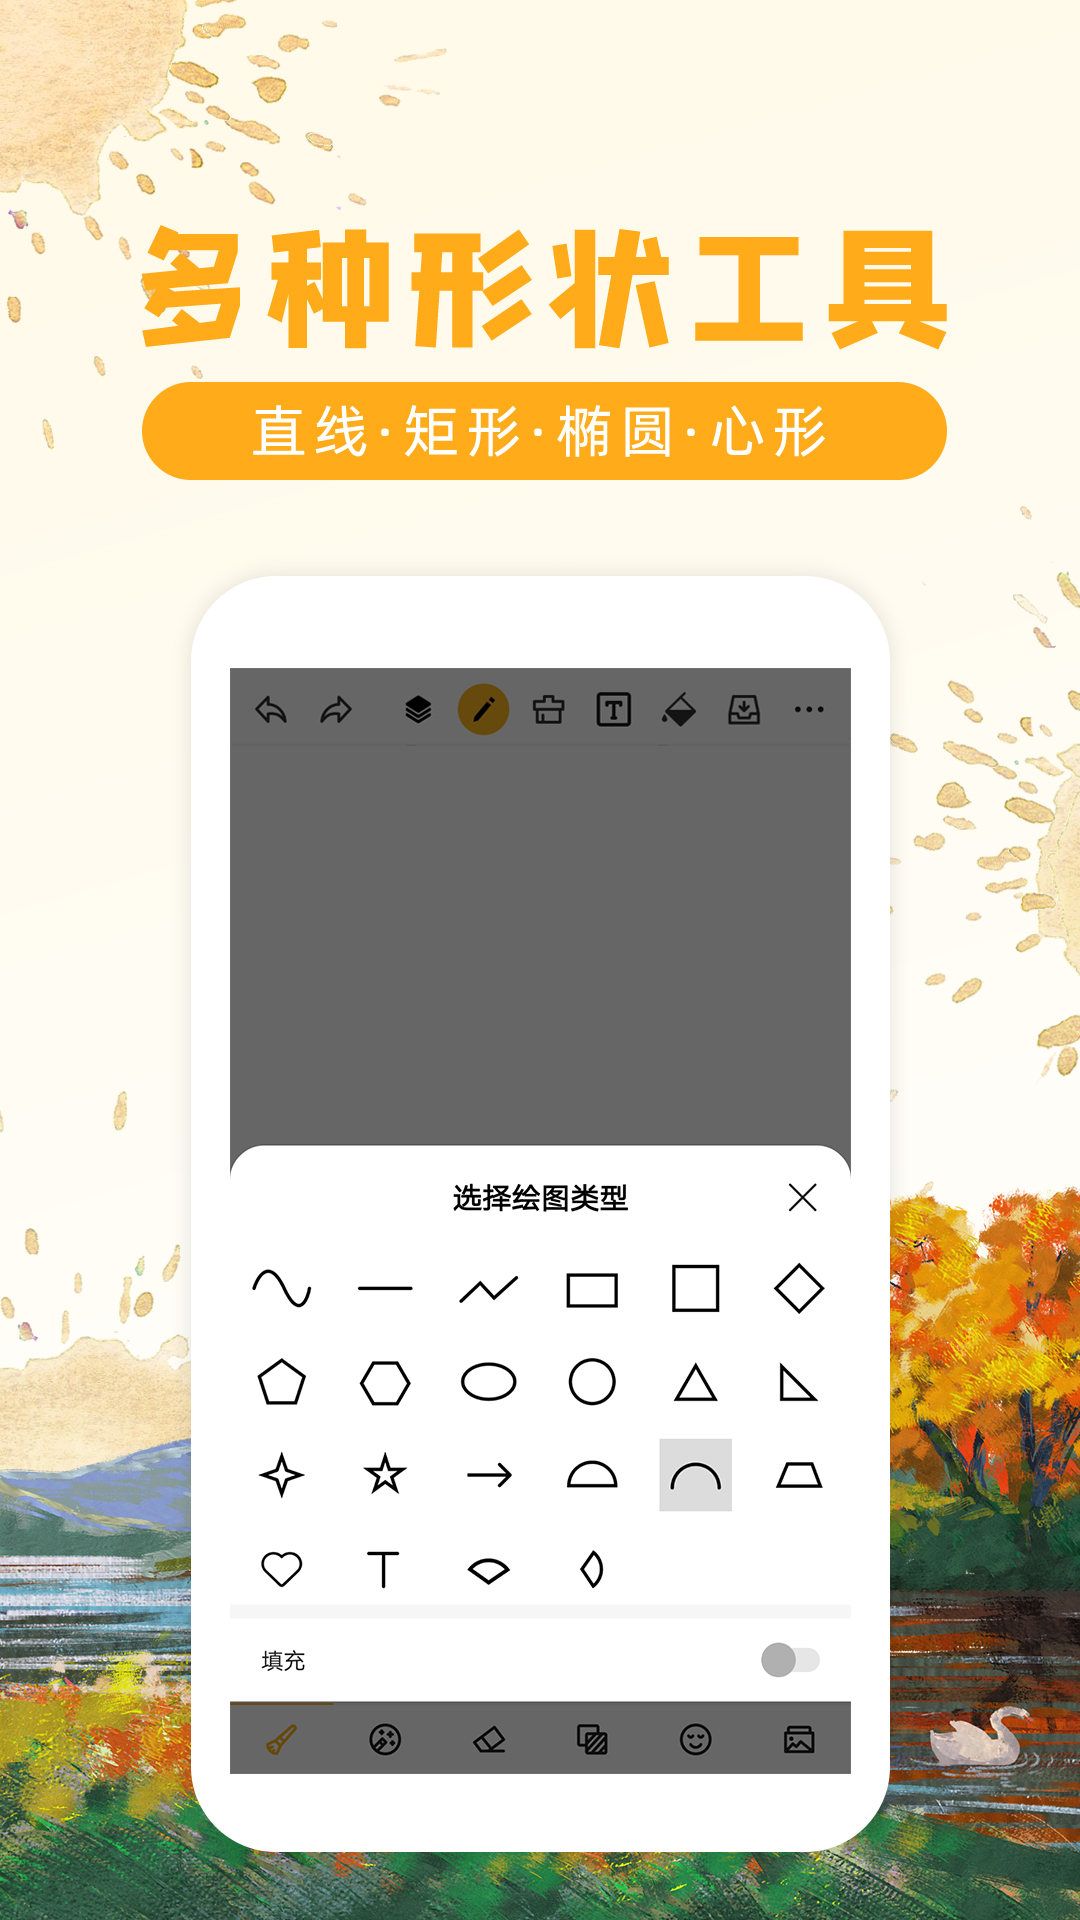 绘画P图软件paint.net.4.2.13官方中文版免费下载 – 看飞碟